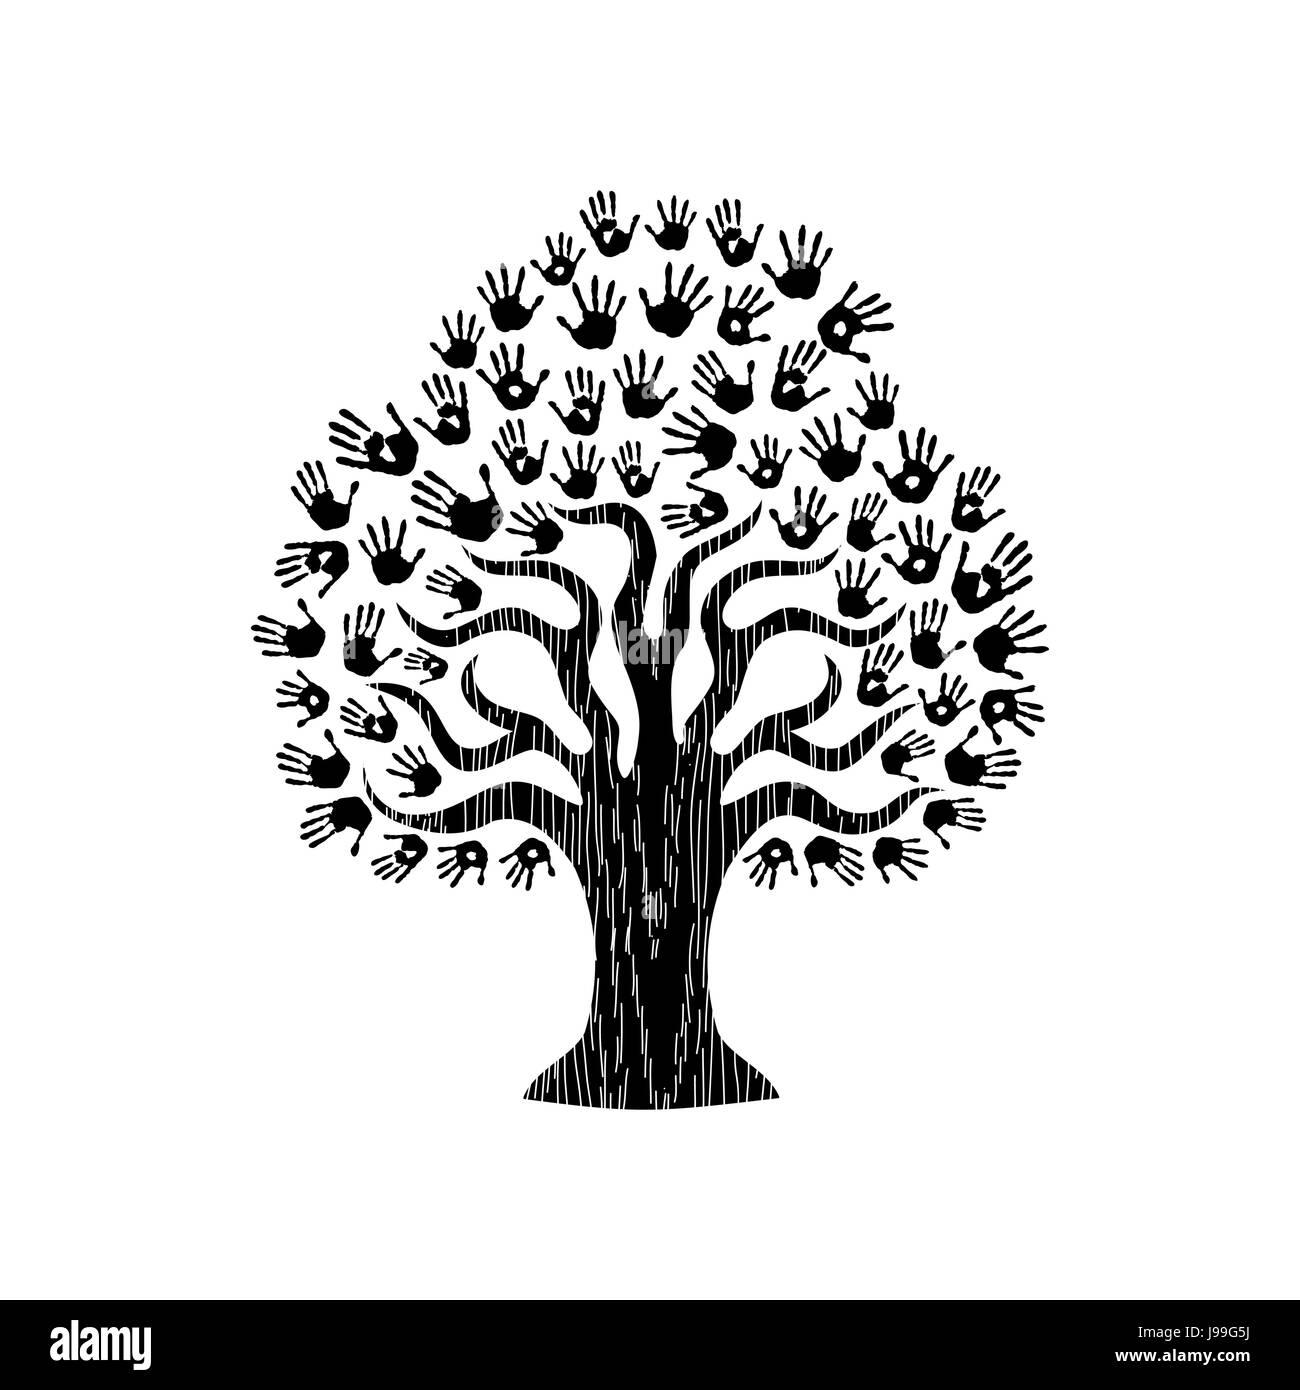 Mains d'arbre communauté diversifiée. Noir et blanc isolé l'illustration de l'aide sociale, concept de charité ou des travaux de groupe. Vecteur EPS10. Illustration de Vecteur